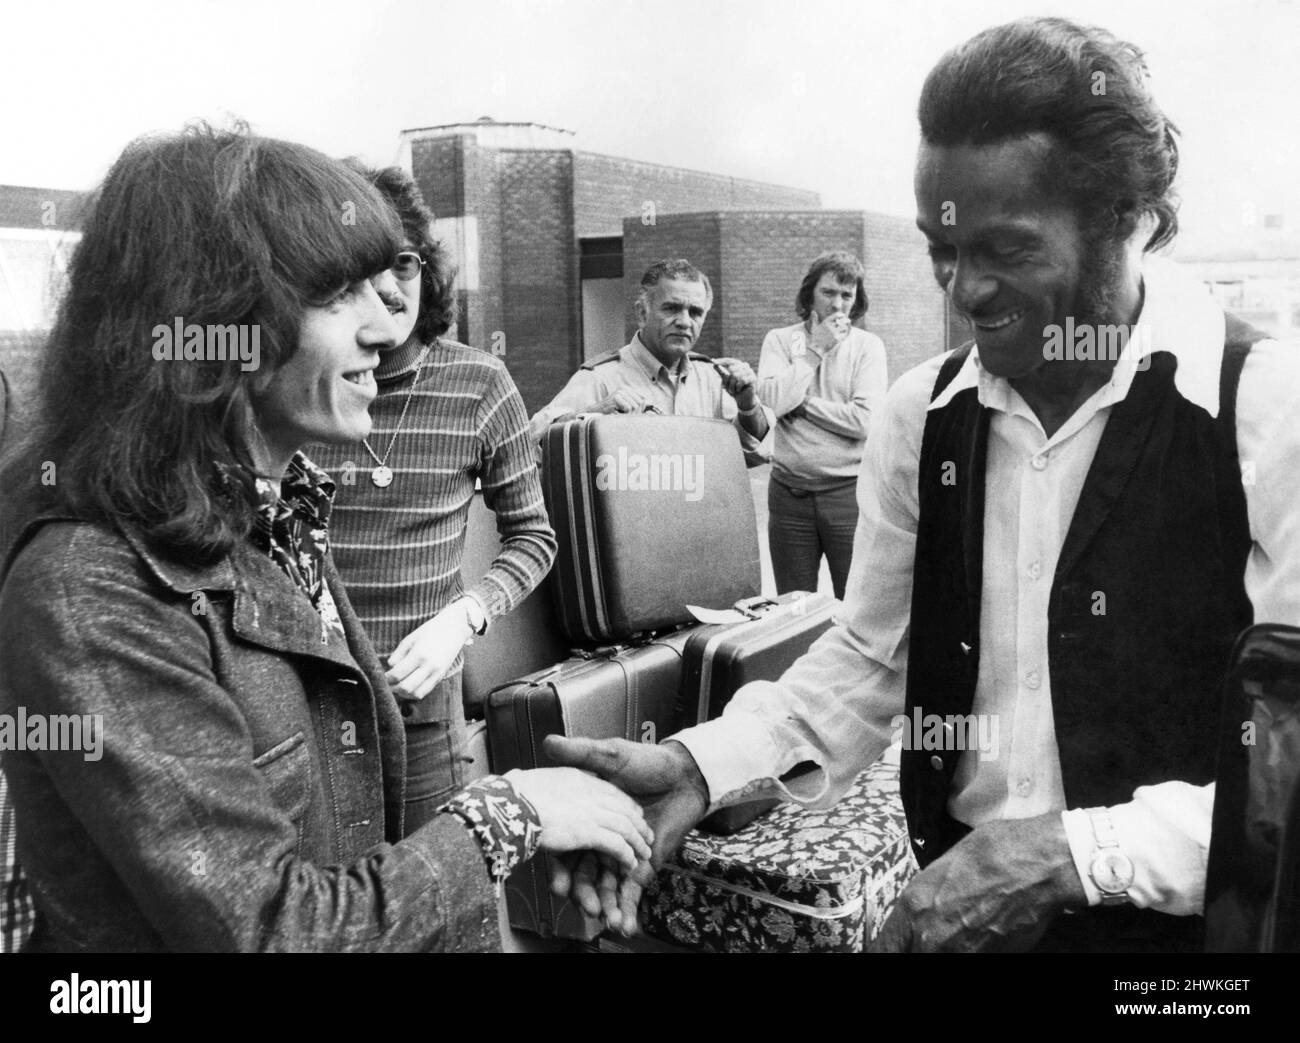 Am Samstag findet im Londoner Wambley Stadium eine Veranstaltung statt, die als „die größte Rock'n'Roll-Show, die jemals zusammengestellt wurde“ gefeiert wird. Die Show wird von beiden Seiten des Atlantiks aus mit Sternen besetzt sein. Einer der Darsteller wird Chuck Berry sein, der am Donnerstag aus Amerika hereingeflogen ist. Auf dem Londoner Flughafen Heathrow hatte Chuck eine Chance, sich mit Bill Wyman von den Rolling Stones zu treffen, der auf der Durchreise war. Chuck Berry (rechts) trifft Rolling Stone Bill Wyman in Heathrow. August 1972 P020628 Stockfoto